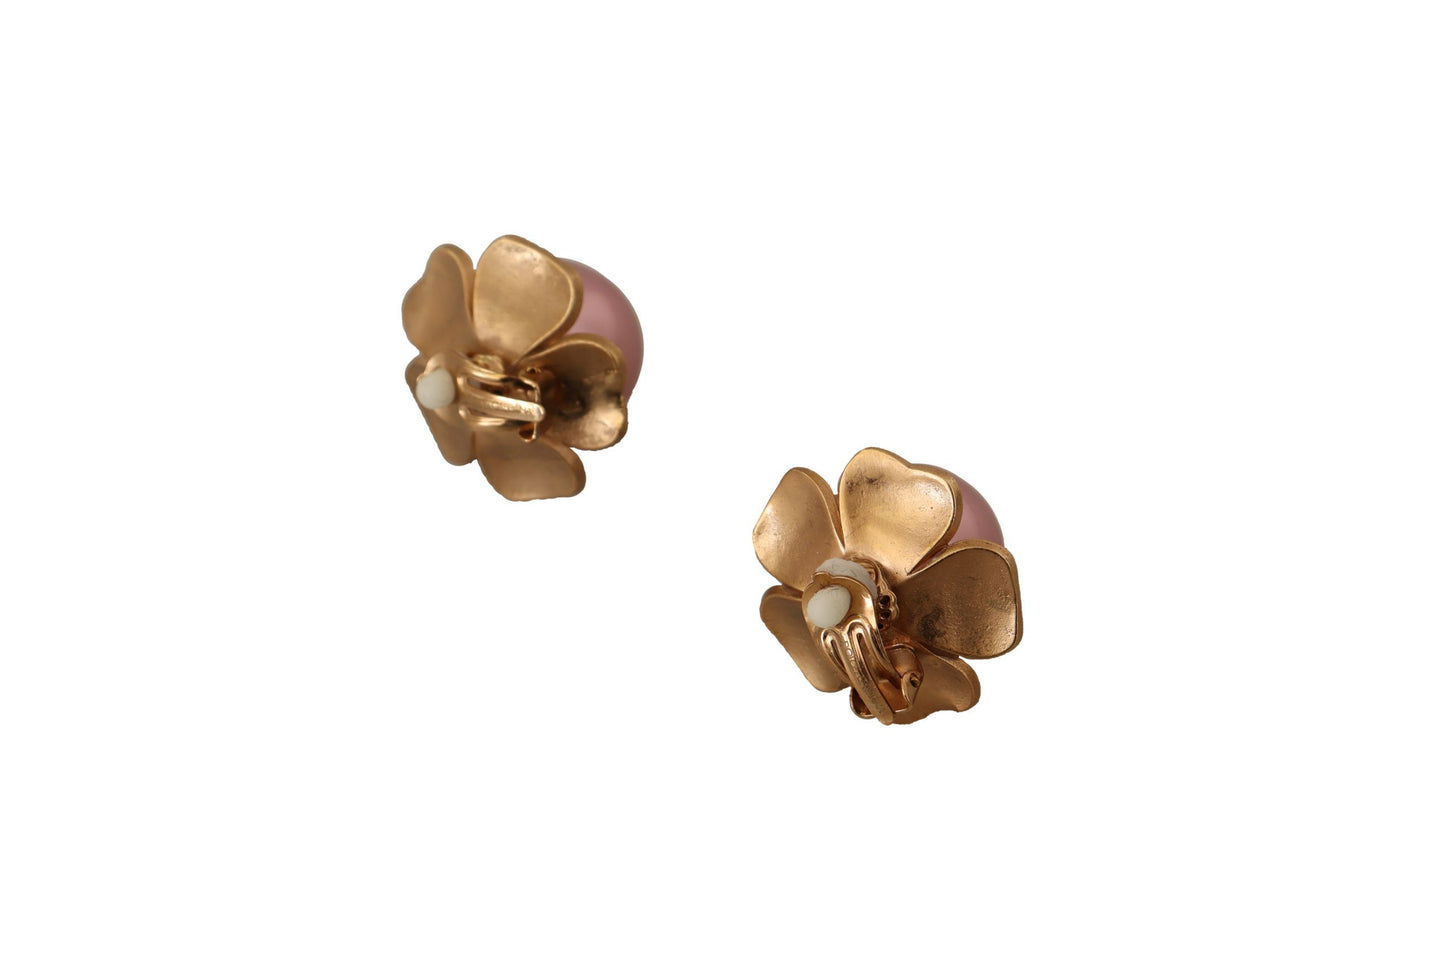 Elegant Floral Crystal Pearl Clip-On Earrings